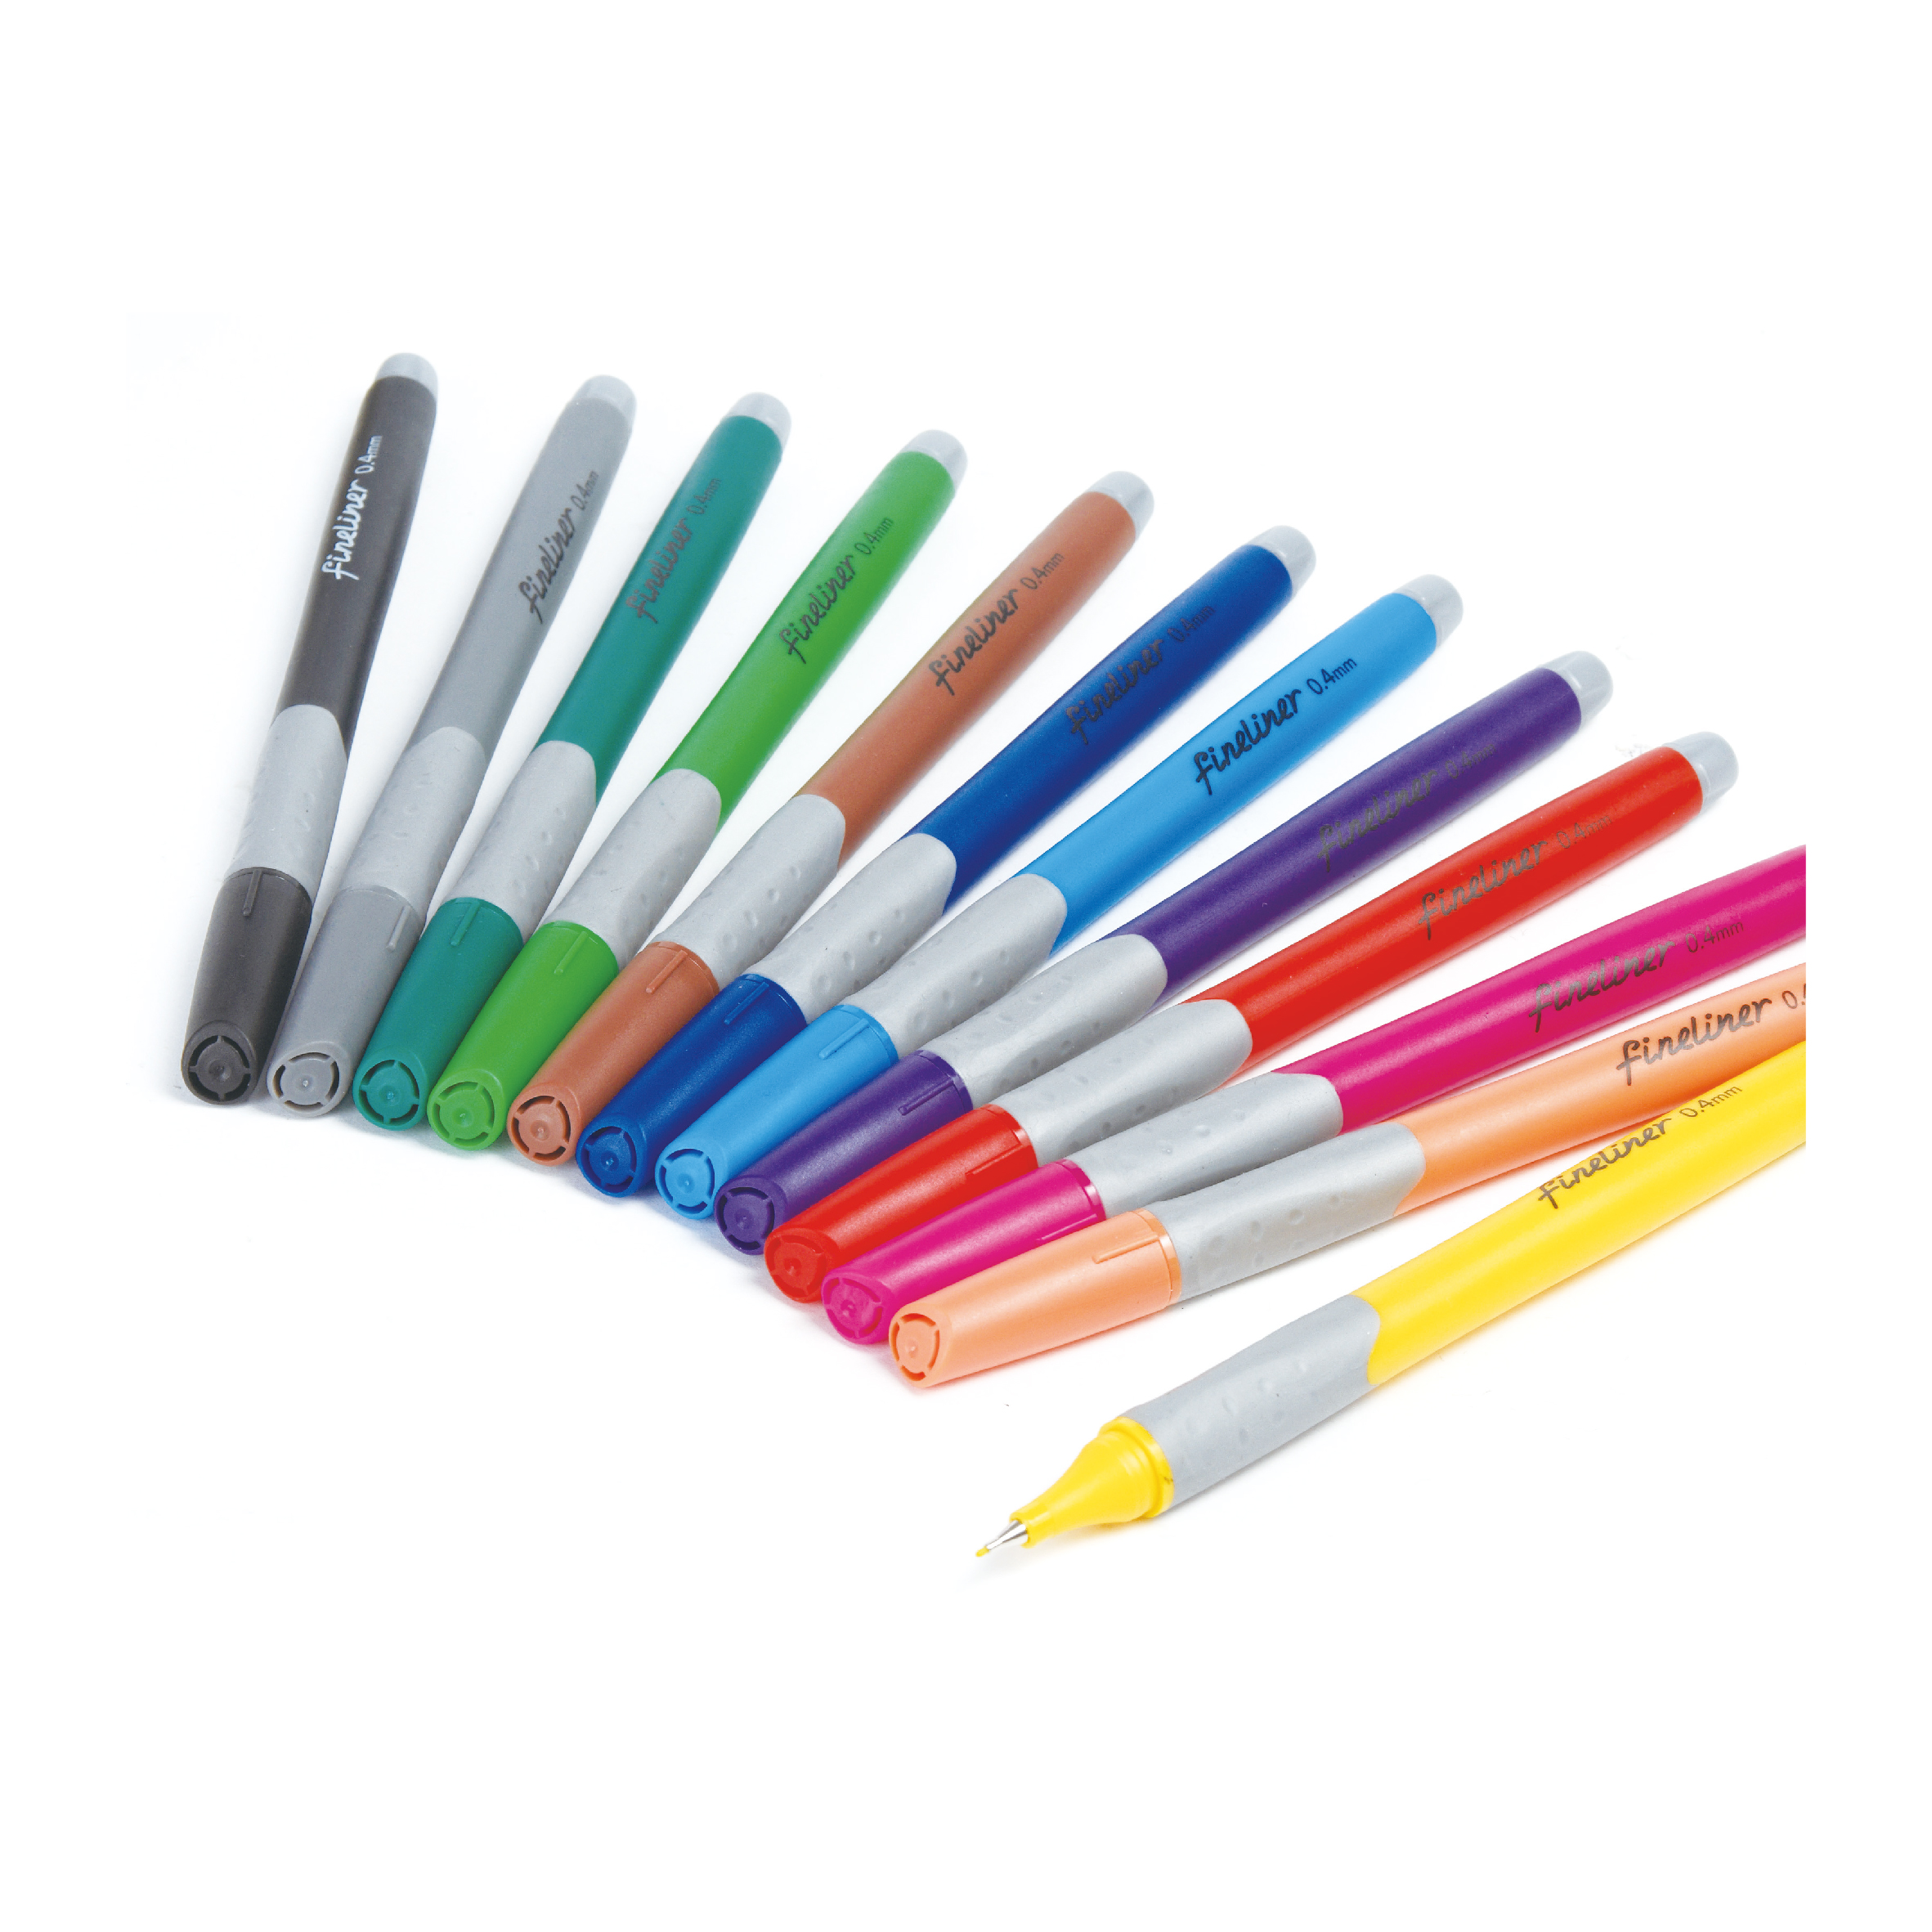 Fineliner - Fineliner Marker pen - Extra Fine Tip - Product